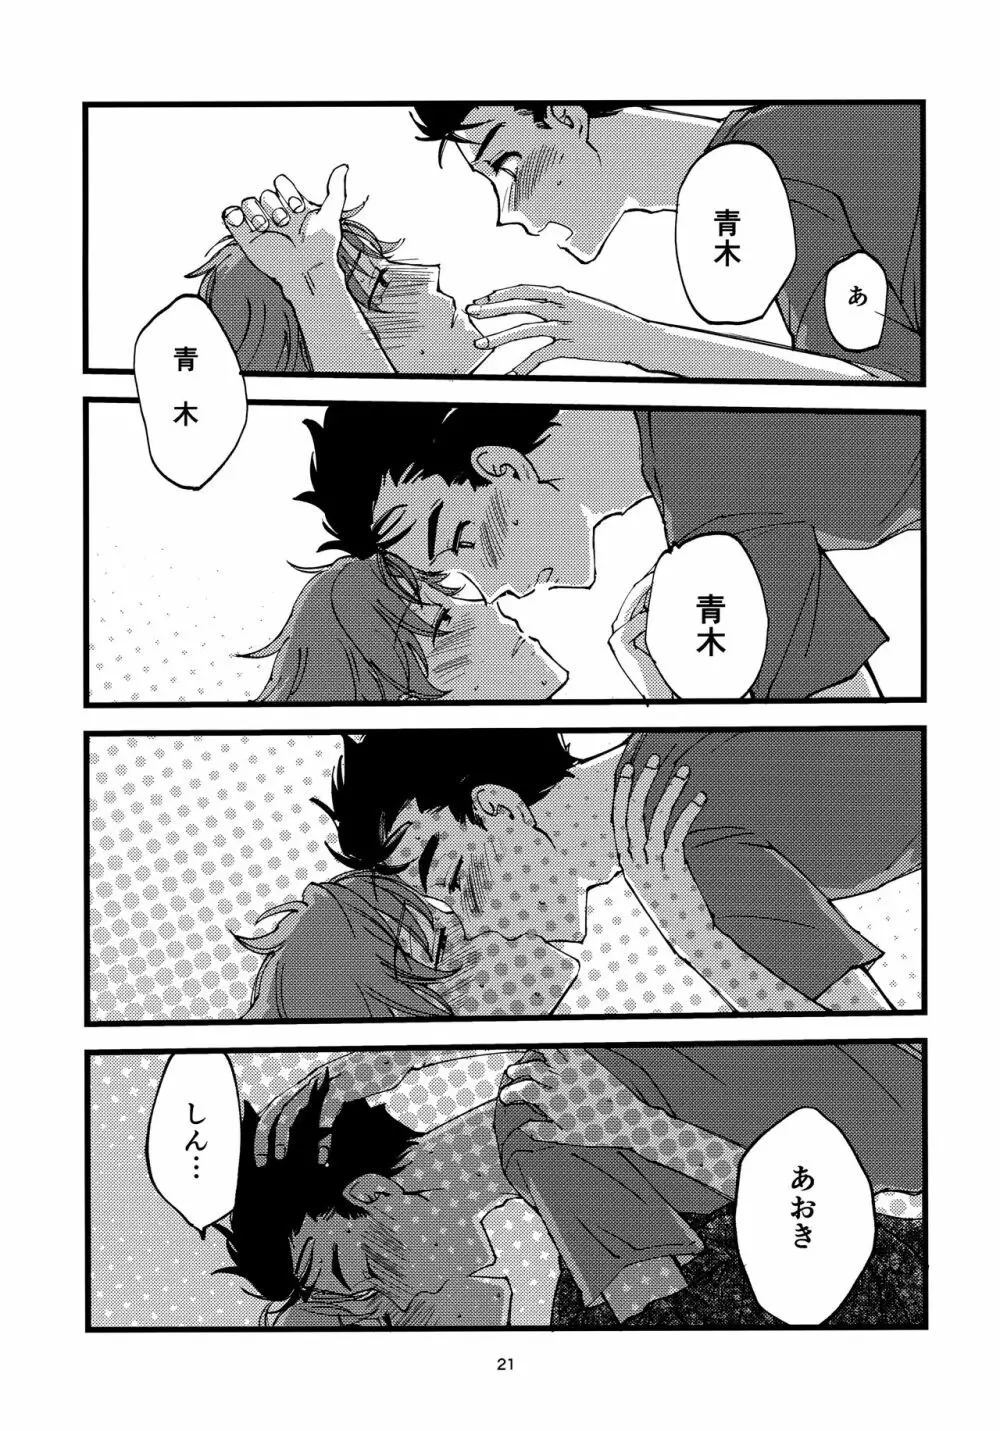 小田が舐めたいはなし。 20ページ